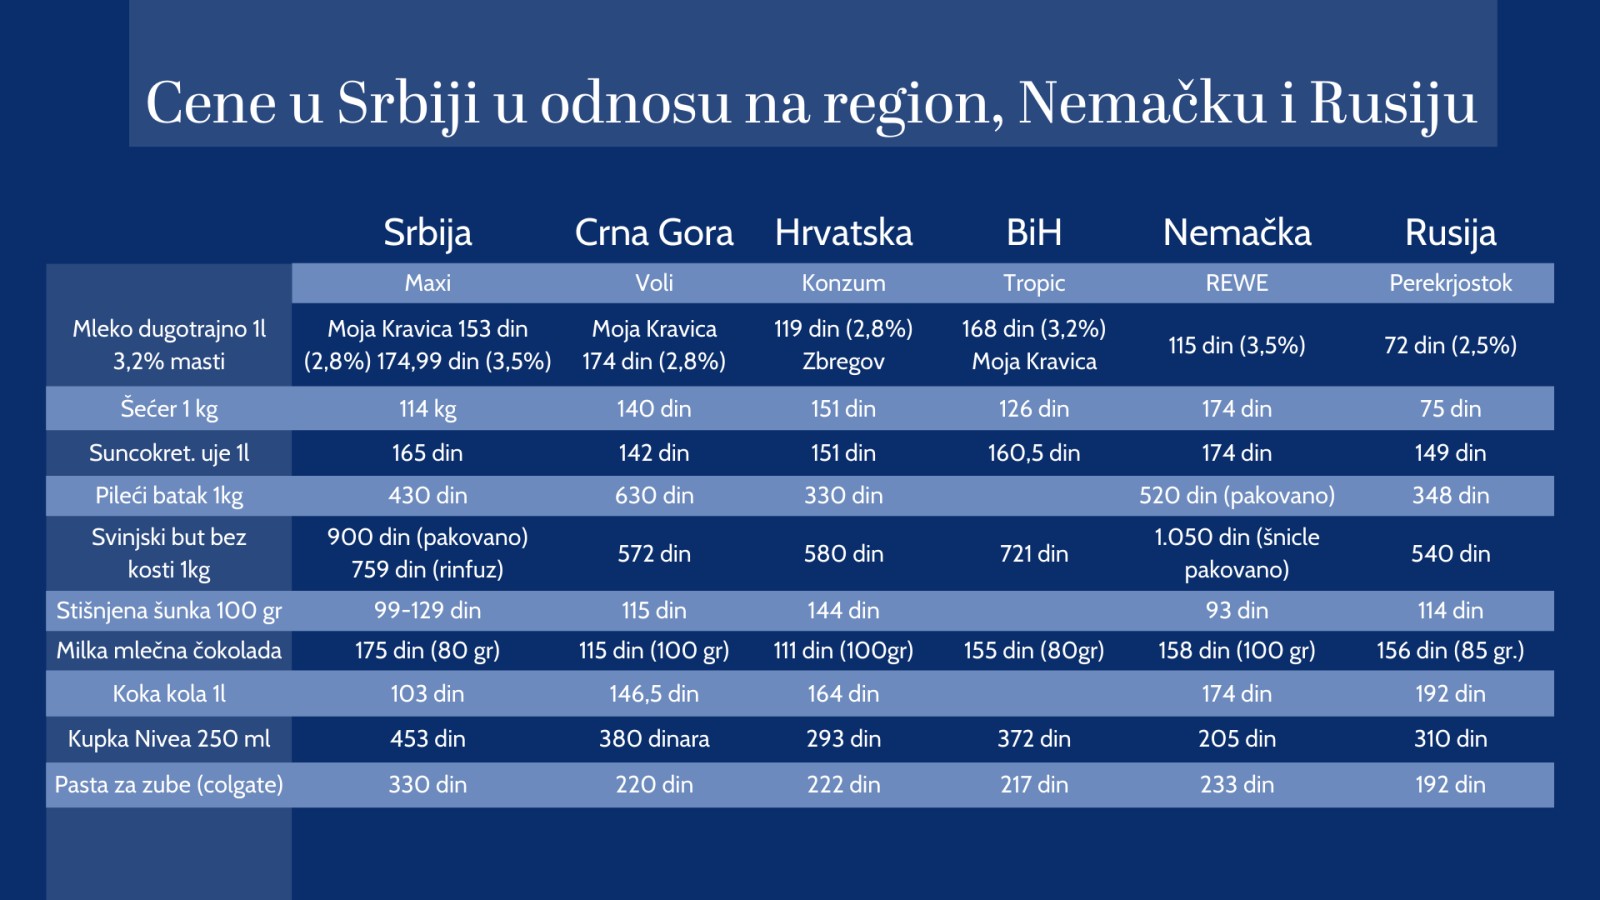 Zašto su cene nekih proizvoda u Srbiji više nego u Nemačkoj? 2